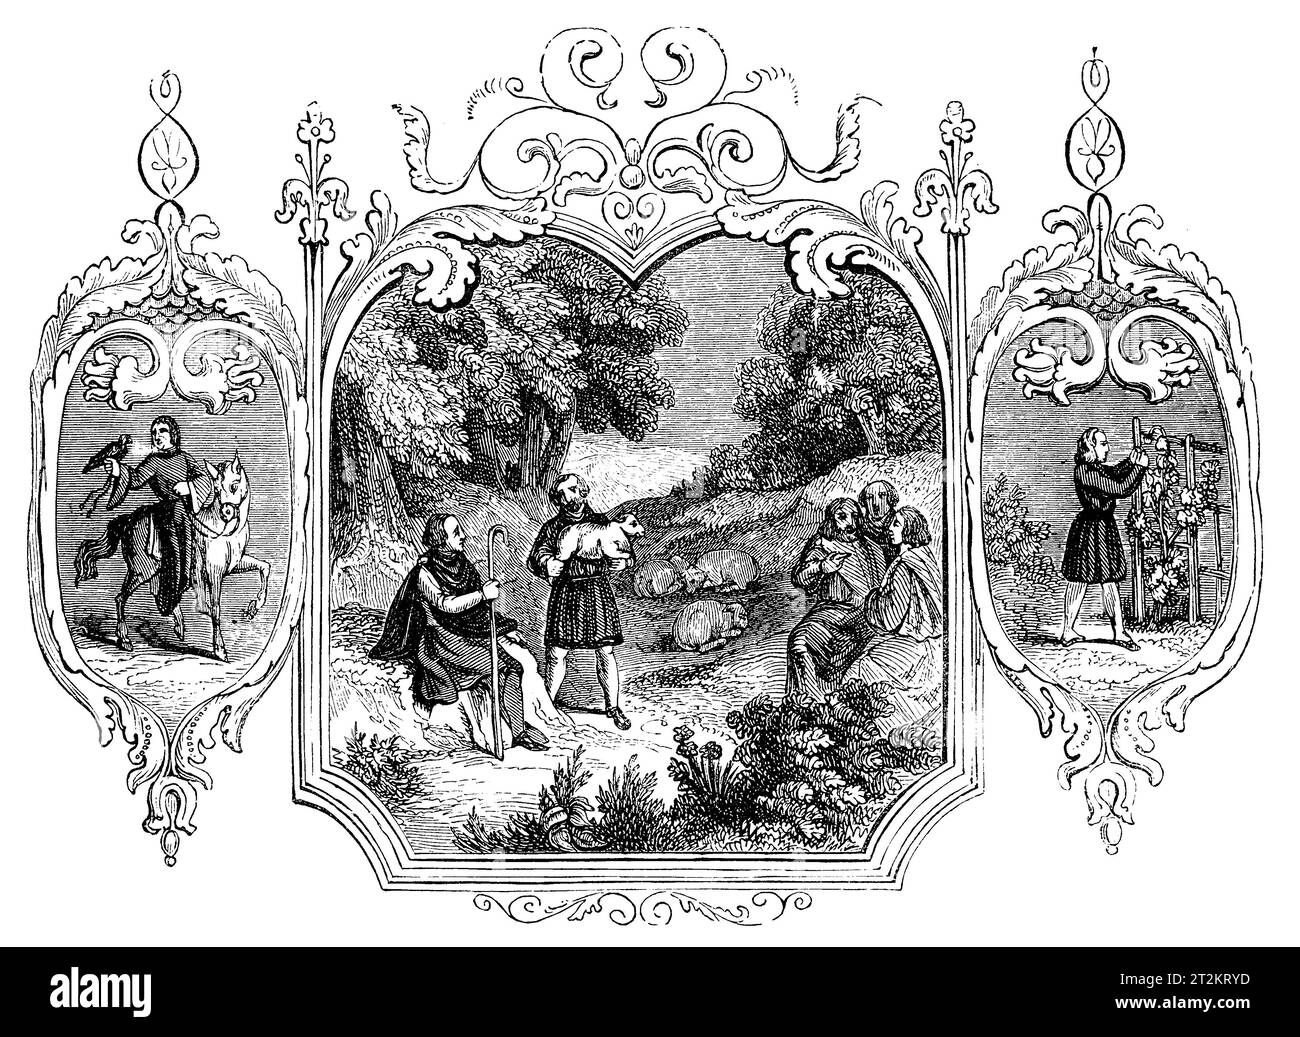 Emblemas sajones del mes de mayo. Ilustración en blanco y negro de la 'Vieja Inglaterra' publicada por James Sangster en 1860. Foto de stock